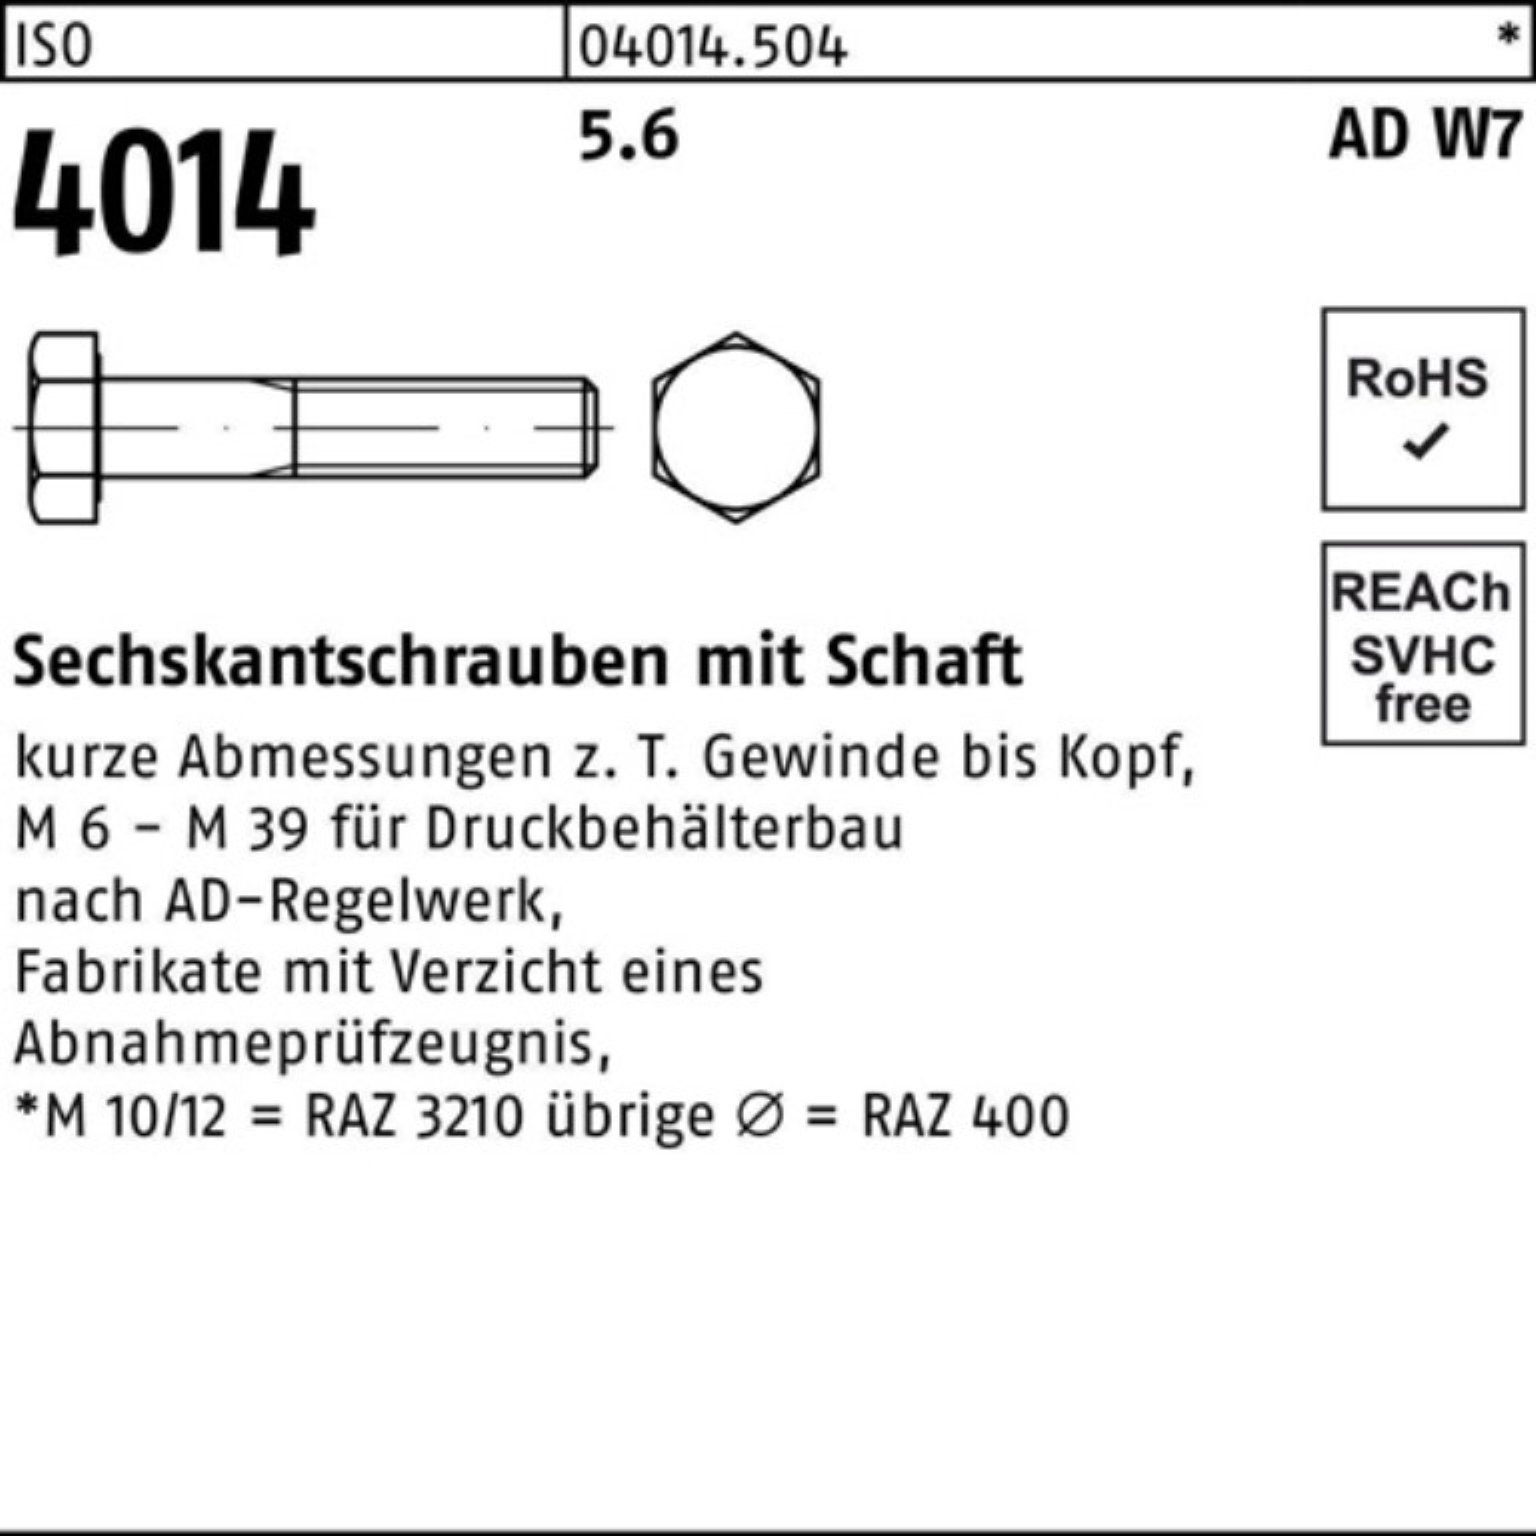 Bufab Sechskantschraube 4014 100er W7 ISO 10 M24x Schaft 140 Pack Stück 5.6 Sechskantschraube